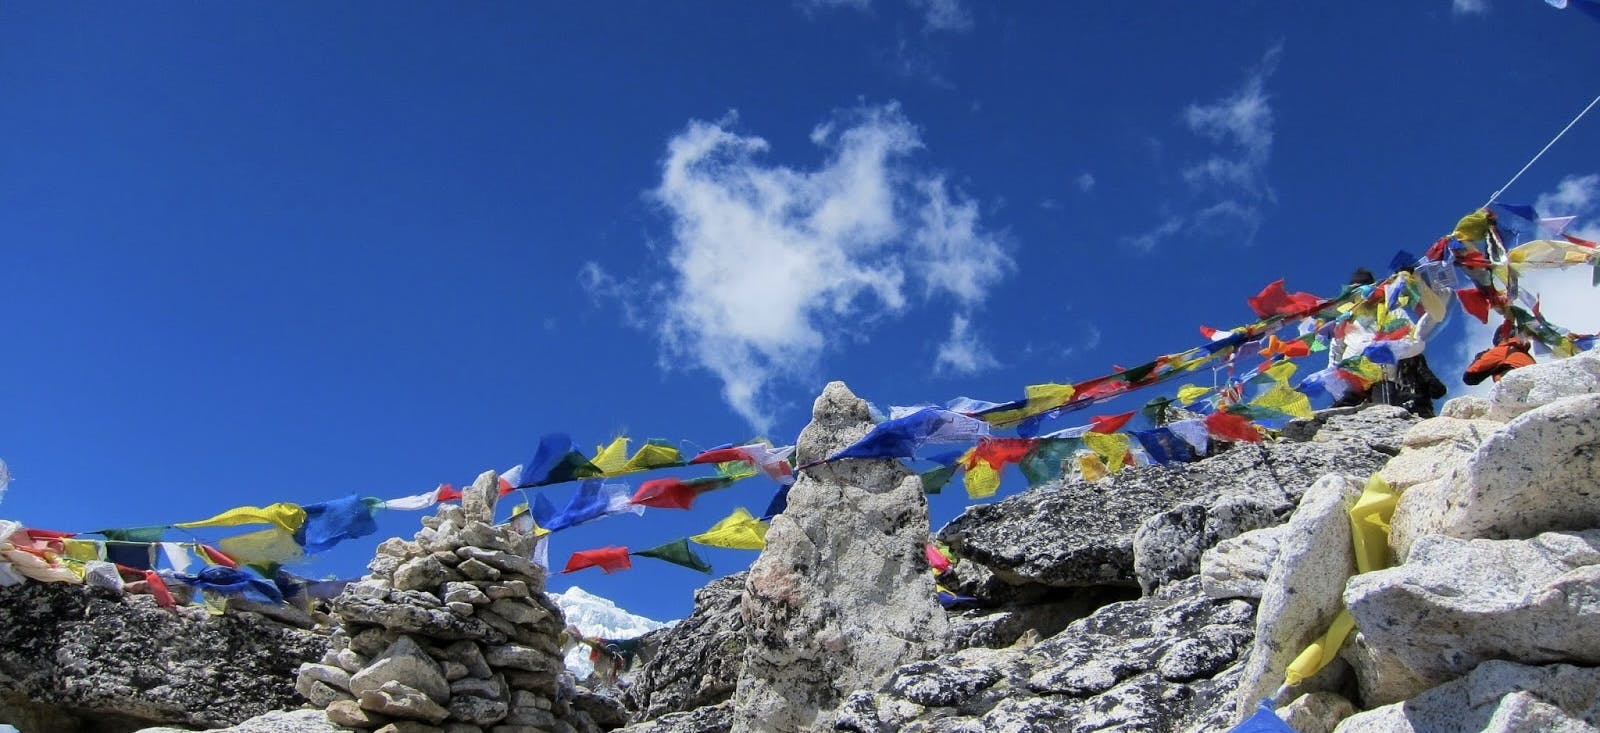 Trekking Guides in Everest Region